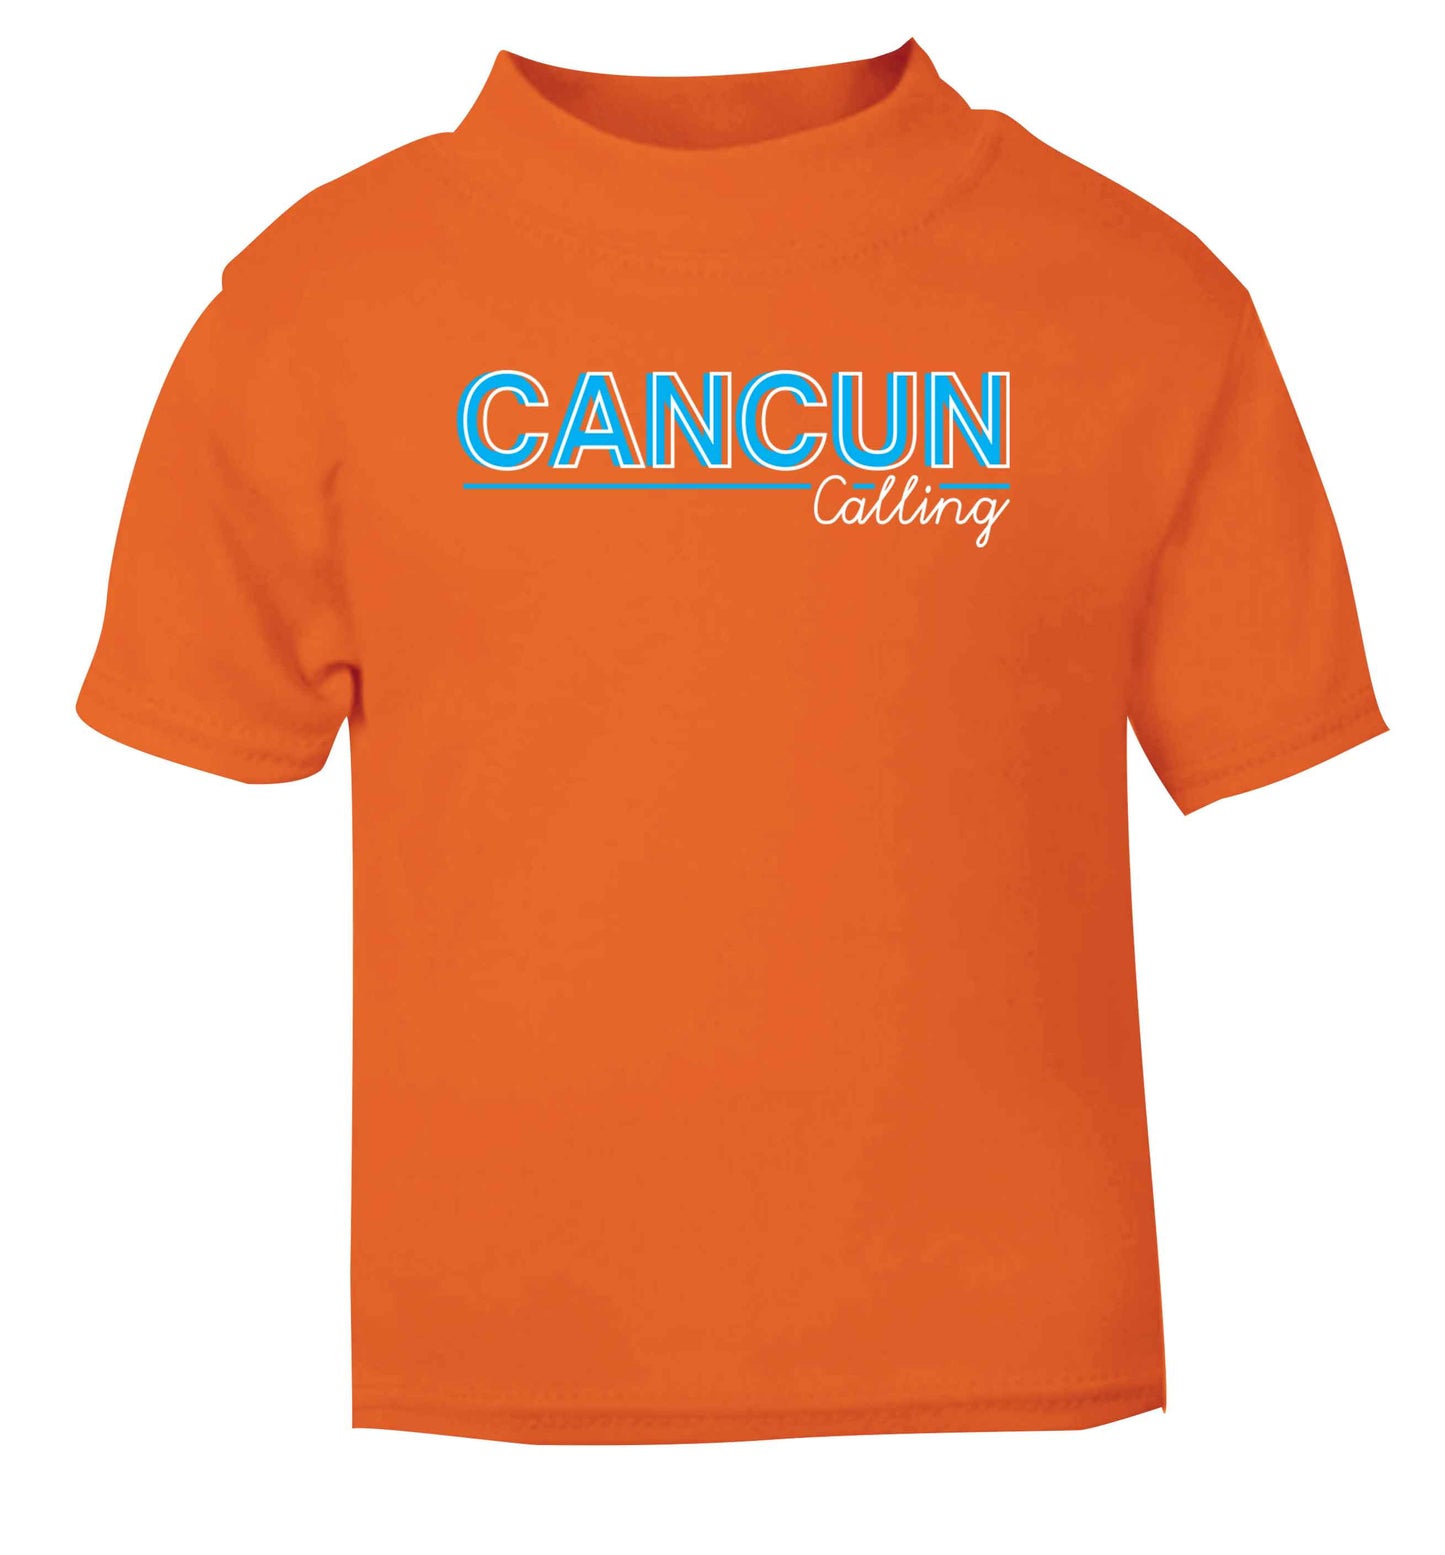 Cancun calling orange Baby Toddler Tshirt 2 Years